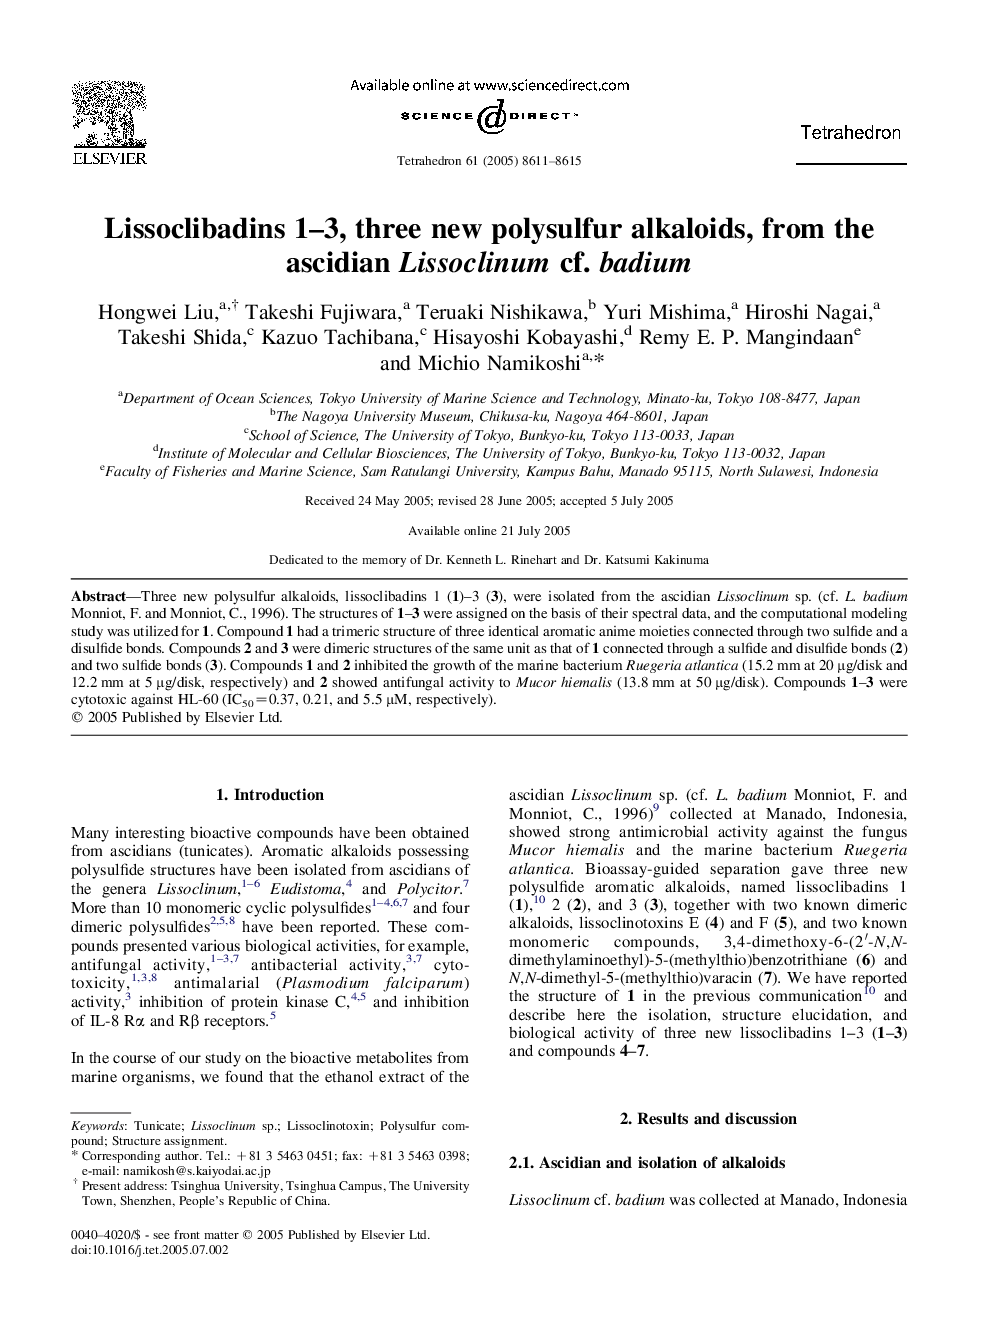 Lissoclibadins 1-3, three new polysulfur alkaloids, from the ascidian Lissoclinum cf. badium